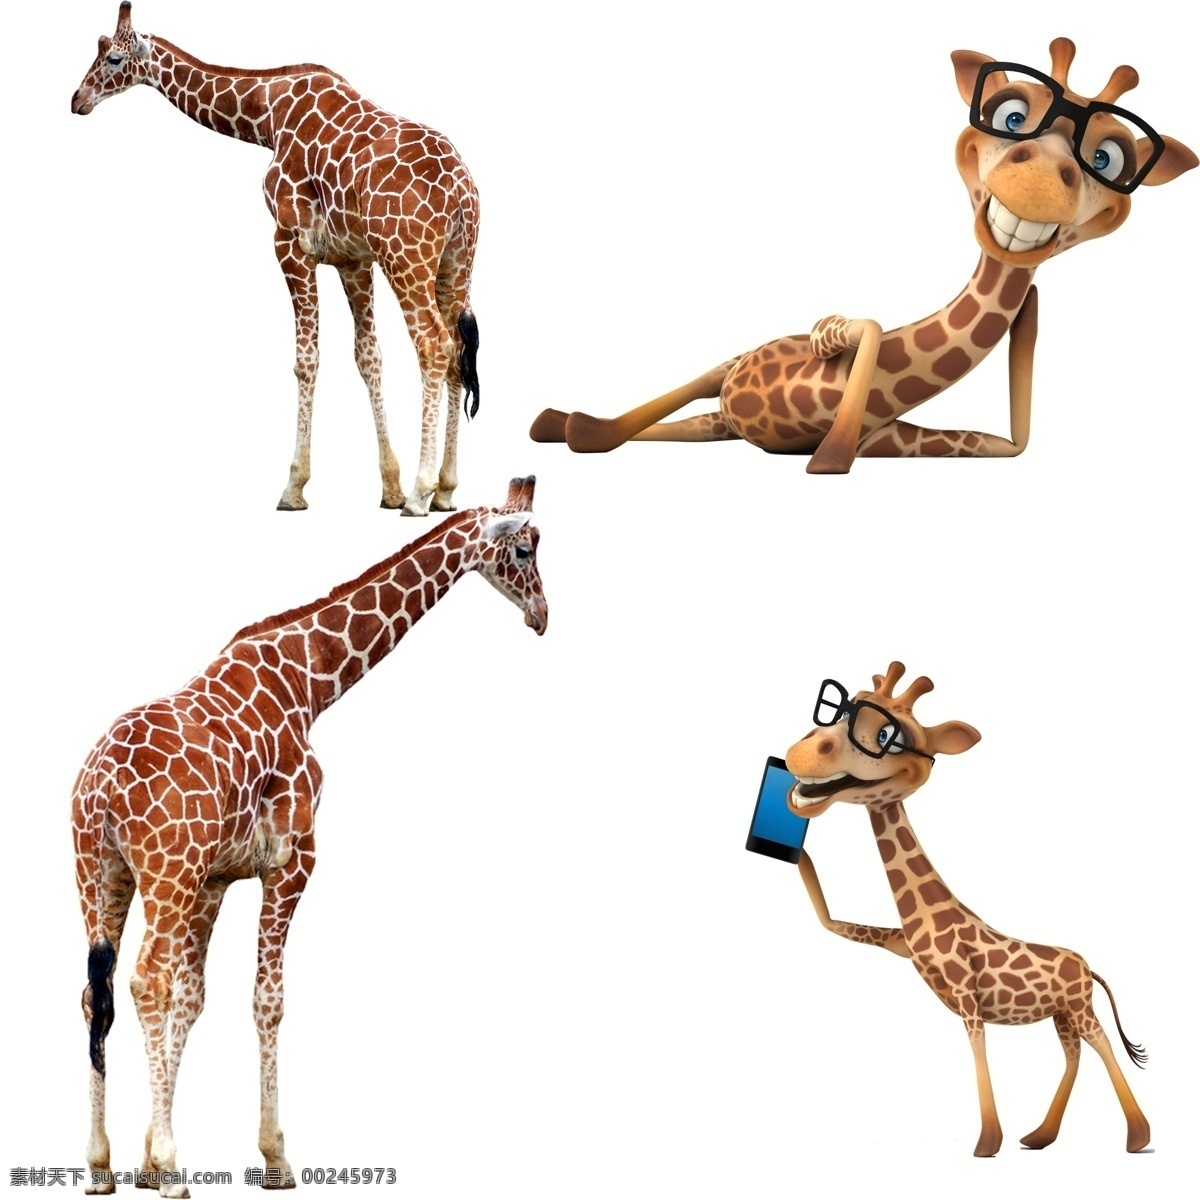 长颈鹿 动物表情 野长颈鹿特写 可爱长颈鹿 非洲长颈鹿 动物 卡通长颈鹿 生物世界 野生动物